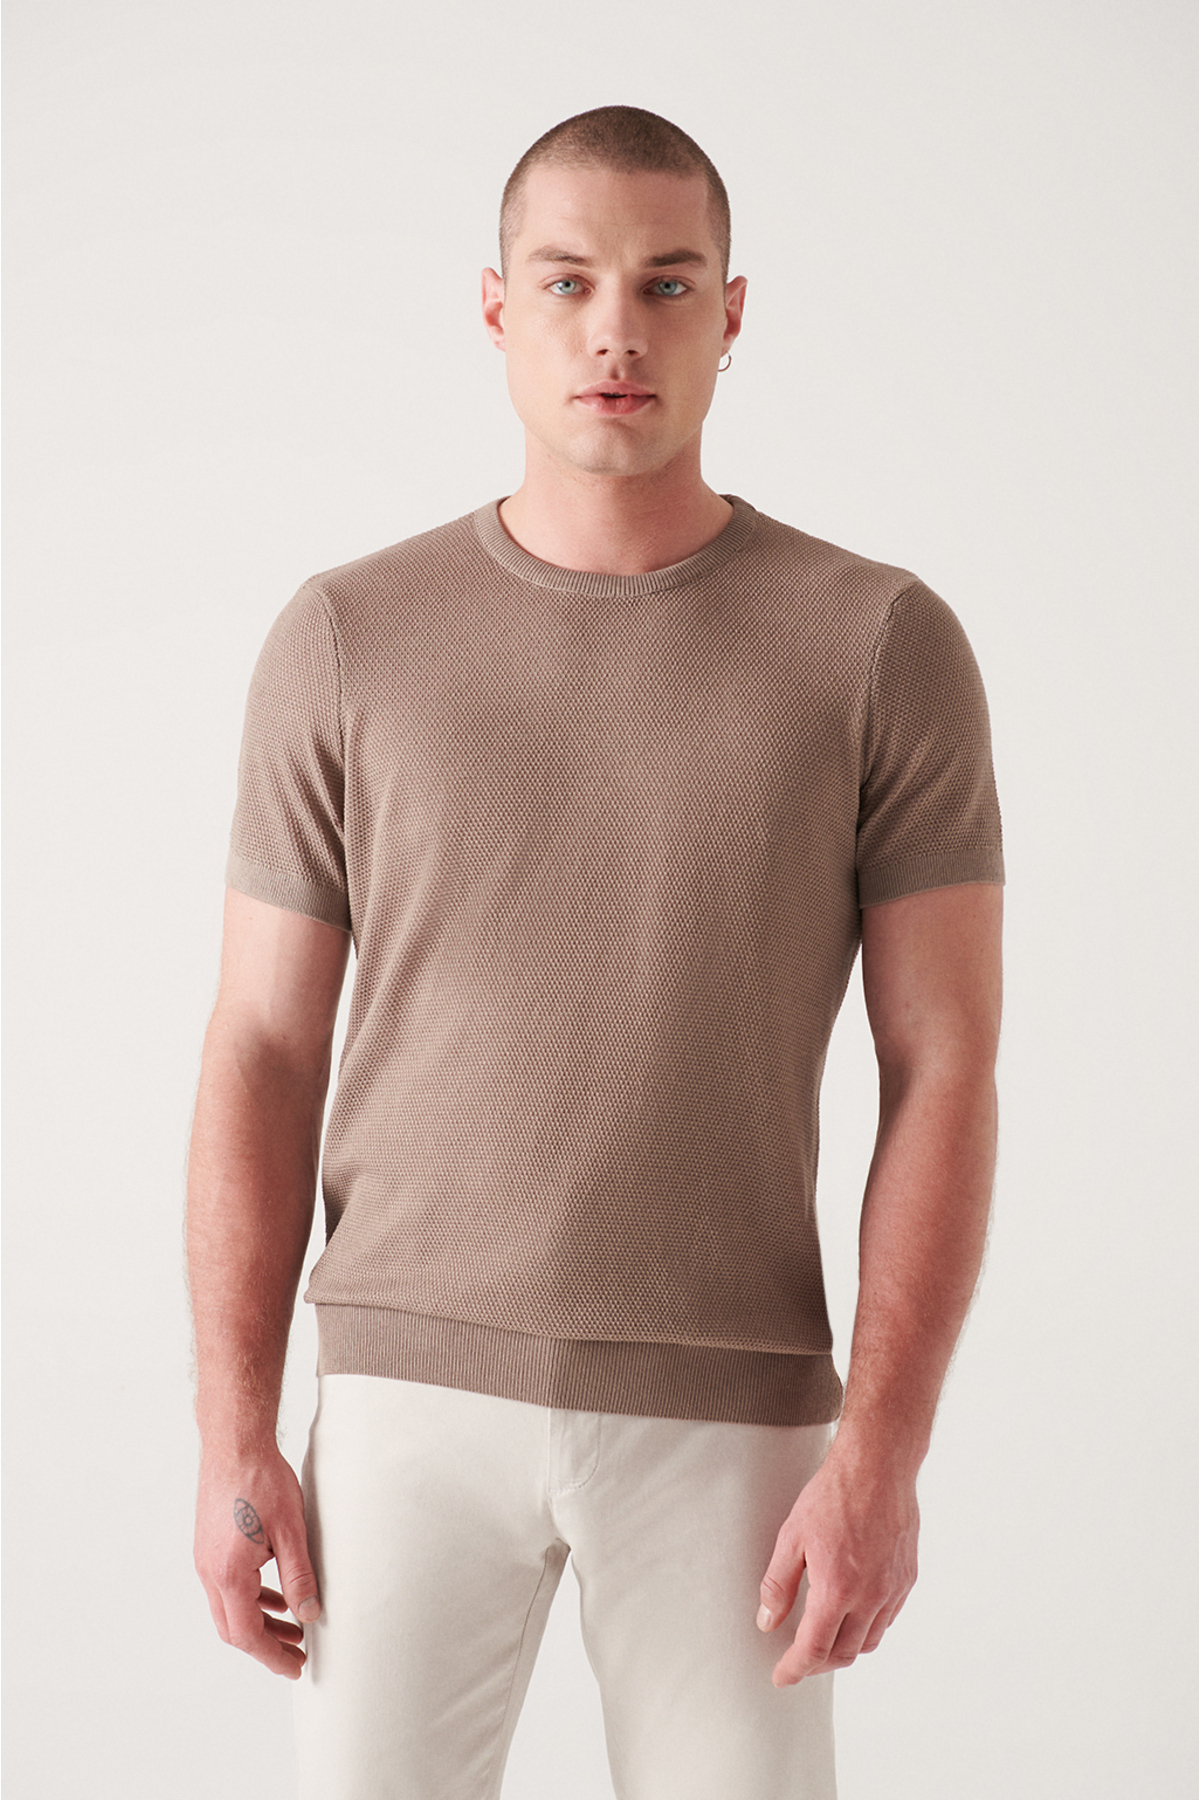 Avva Men's Mink Textured Slim Fit Slim Fit Knitwear T-shirt